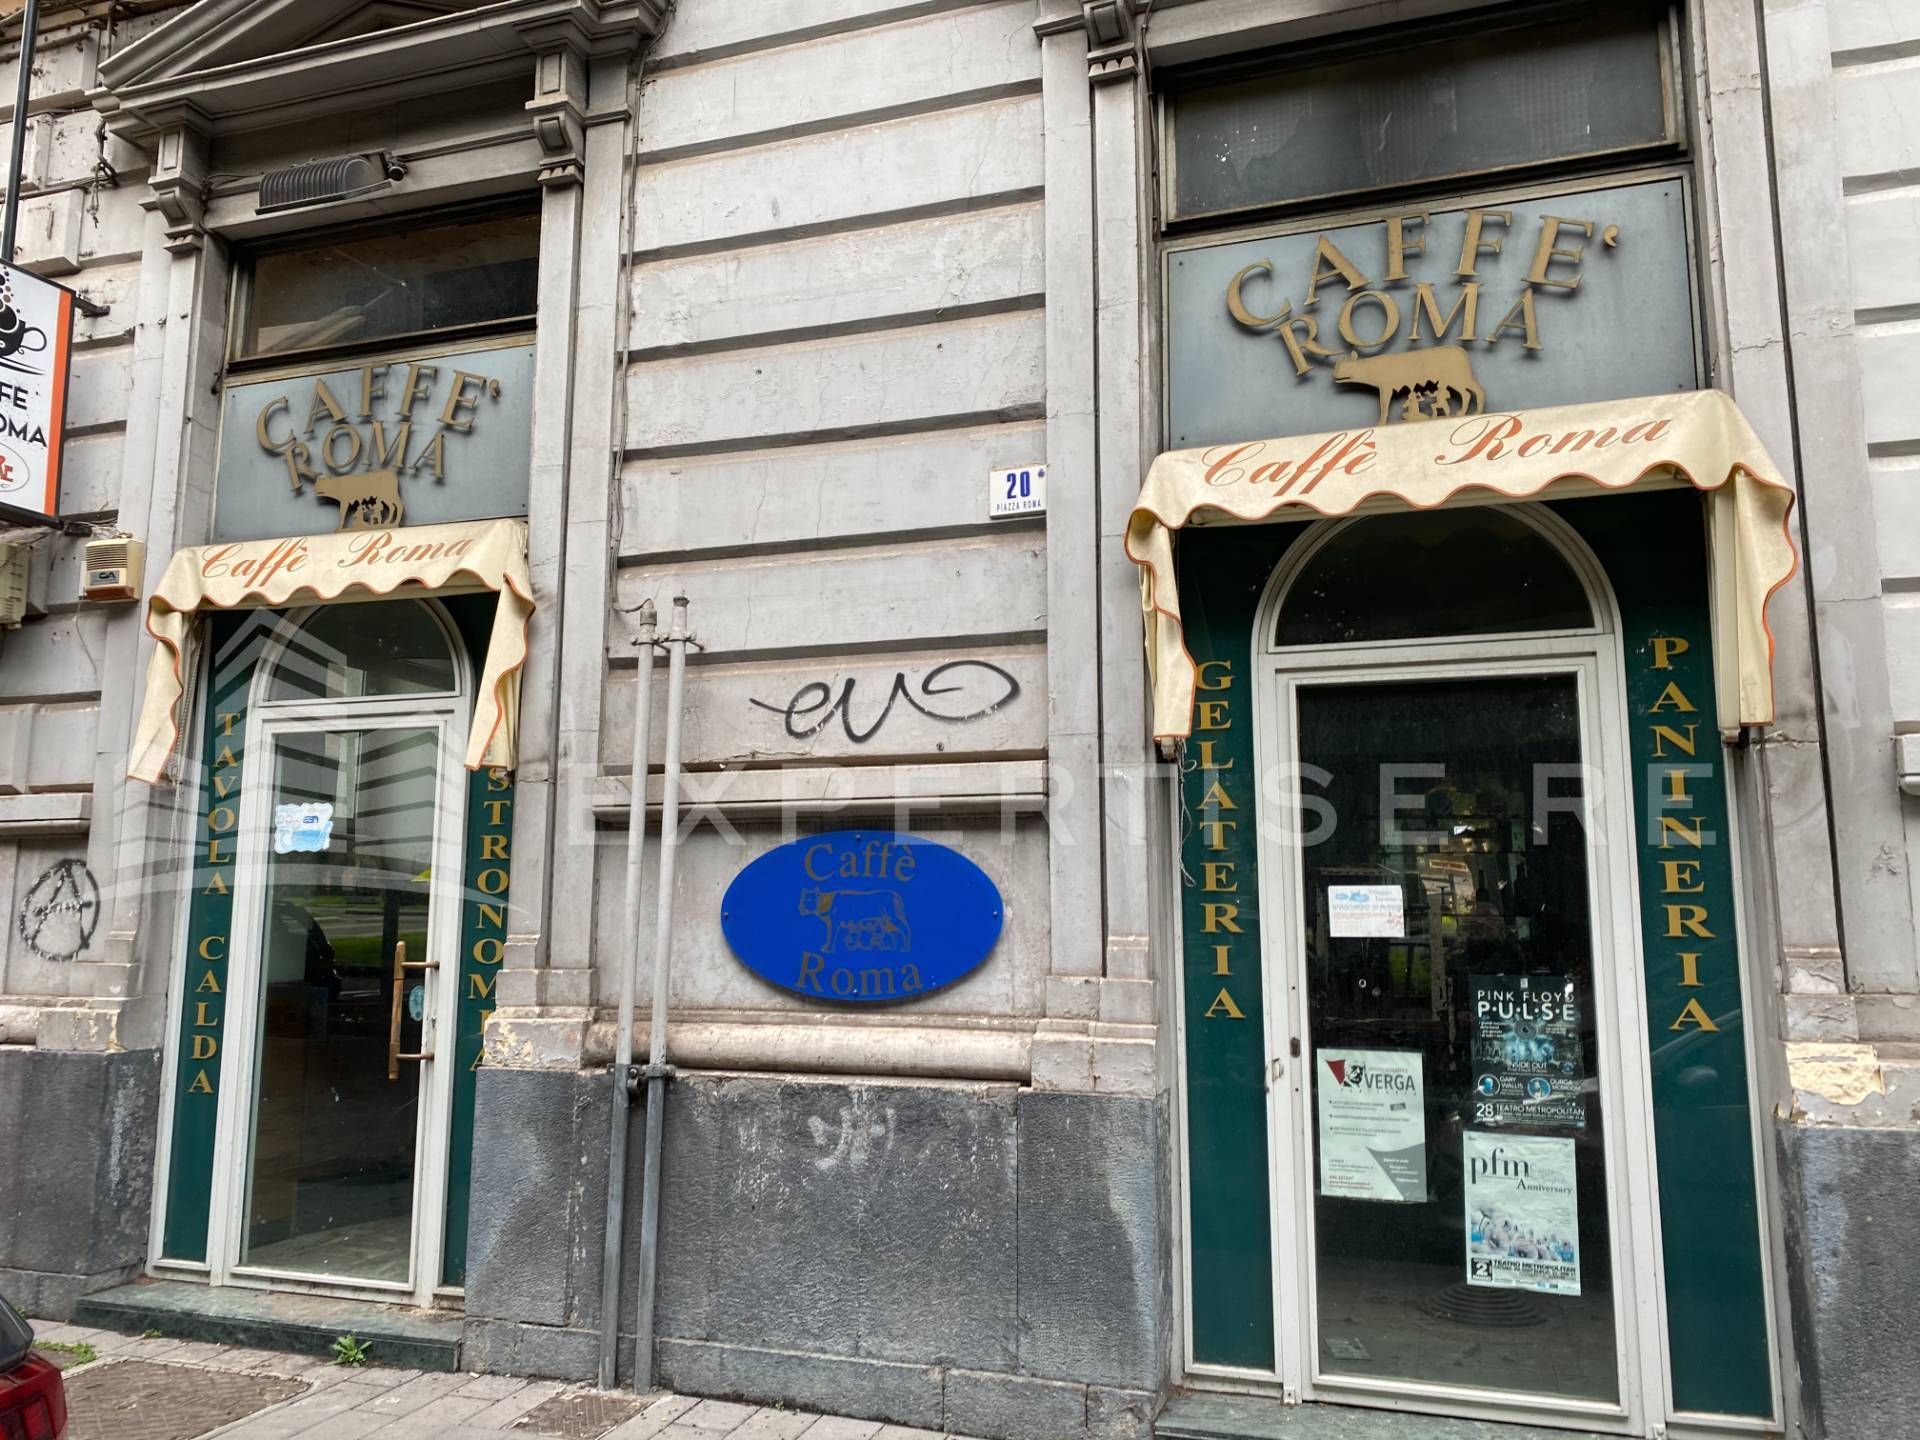 Locale commerciale in affitto, Catania zona centro